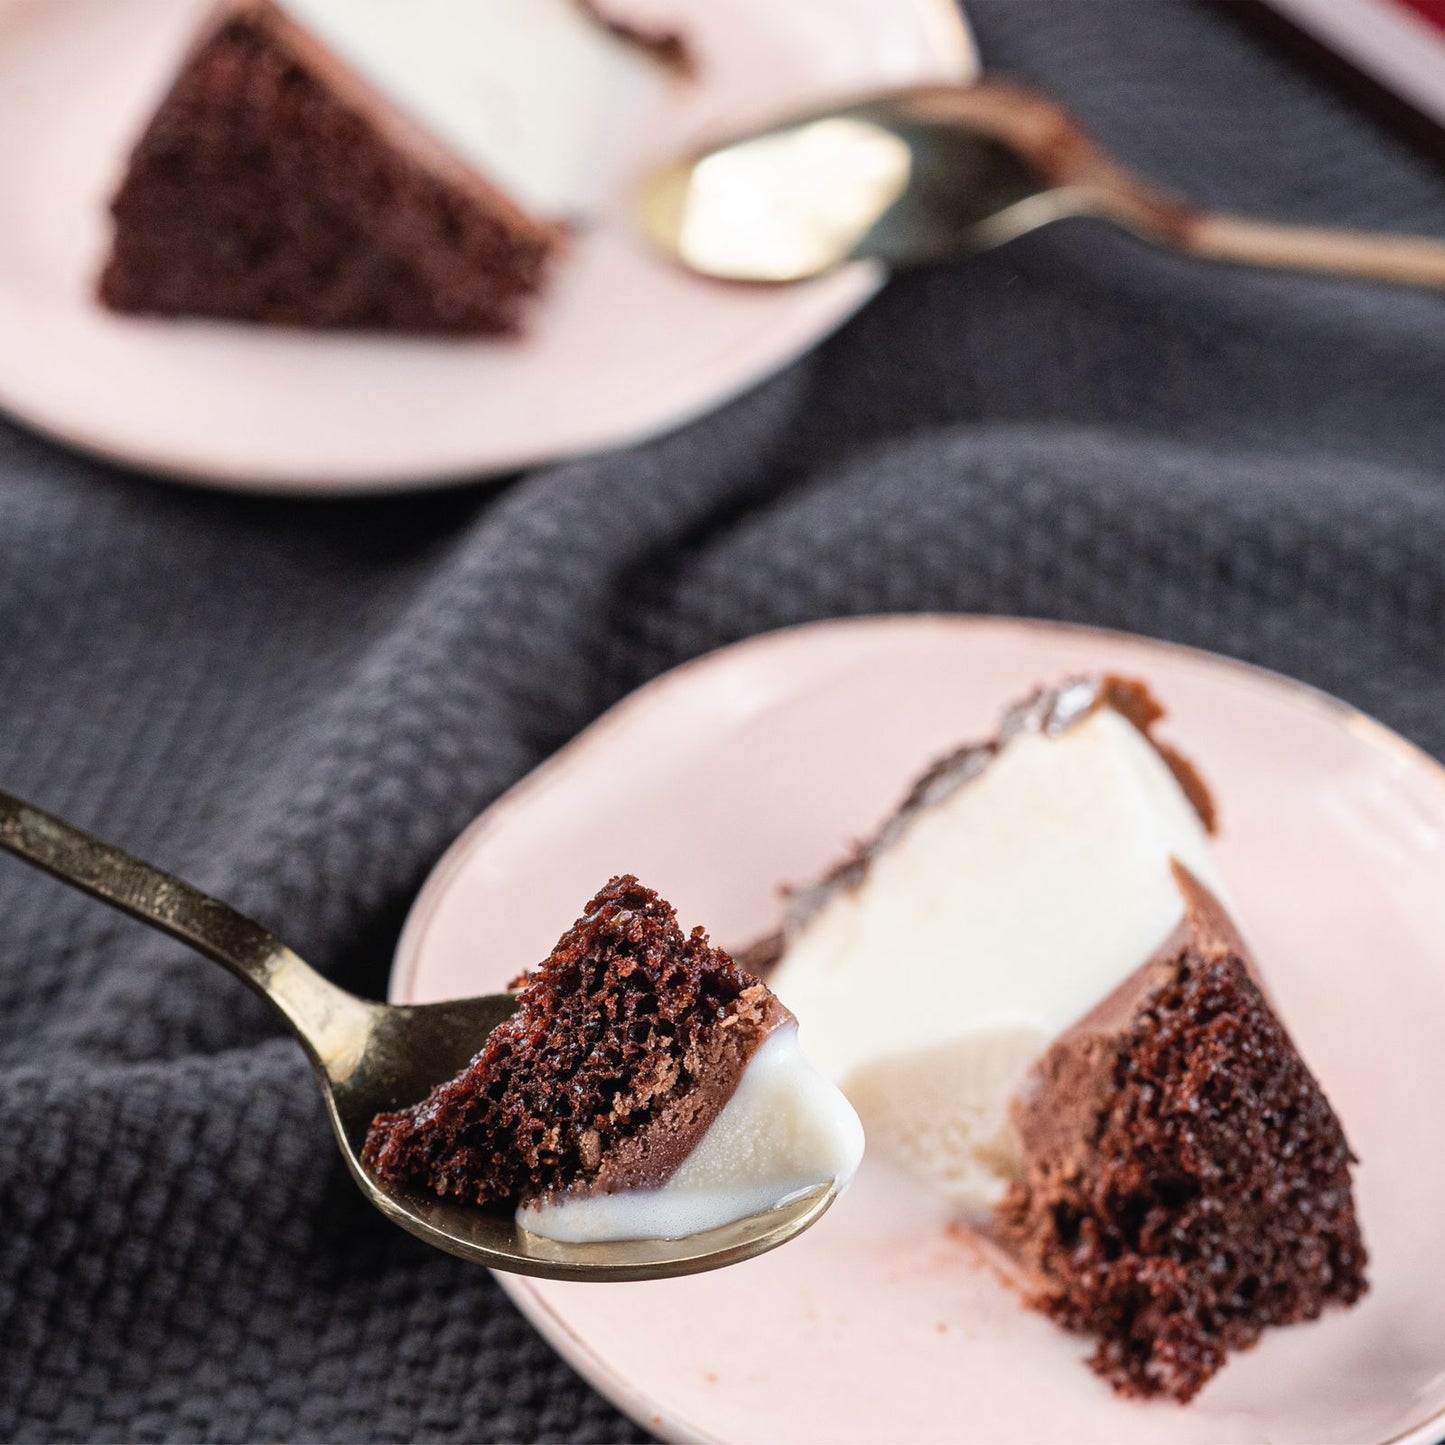 Chocolate Vanilla Ice Cream Cake